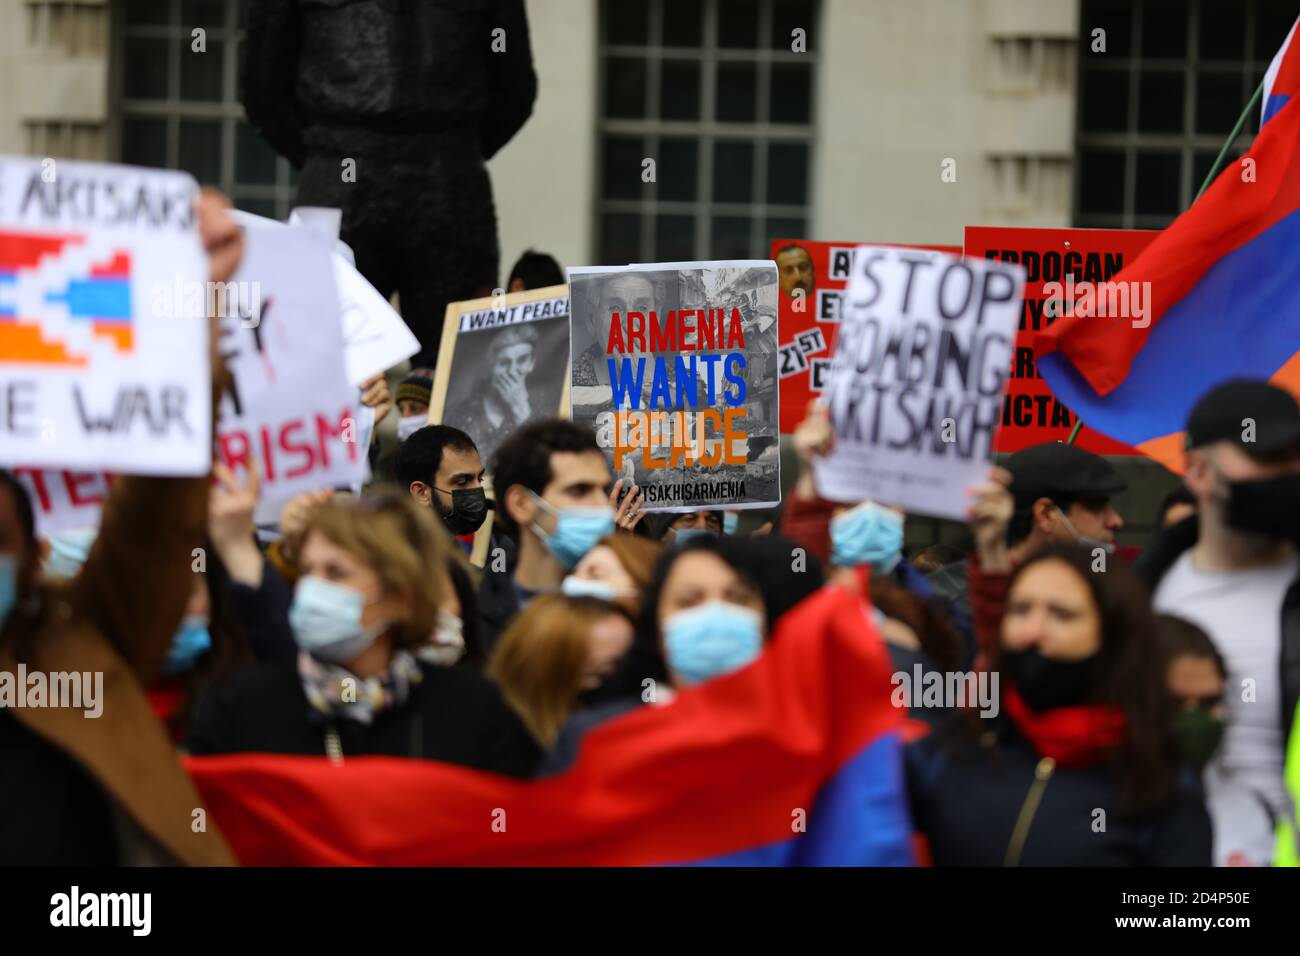 Manifestanti a Whitehall, Londra, chiedono la fine delle ostilità a Nagorno-Karabakh, noto anche come Artsakh. La protesta arriva quando Armenia e Azerbaigian hanno accettato un cessate il fuoco a Nagorno-Karabakh, nonostante le affermazioni di entrambe le parti che l'altra ha violato il cessate il fuoco. Foto Stock